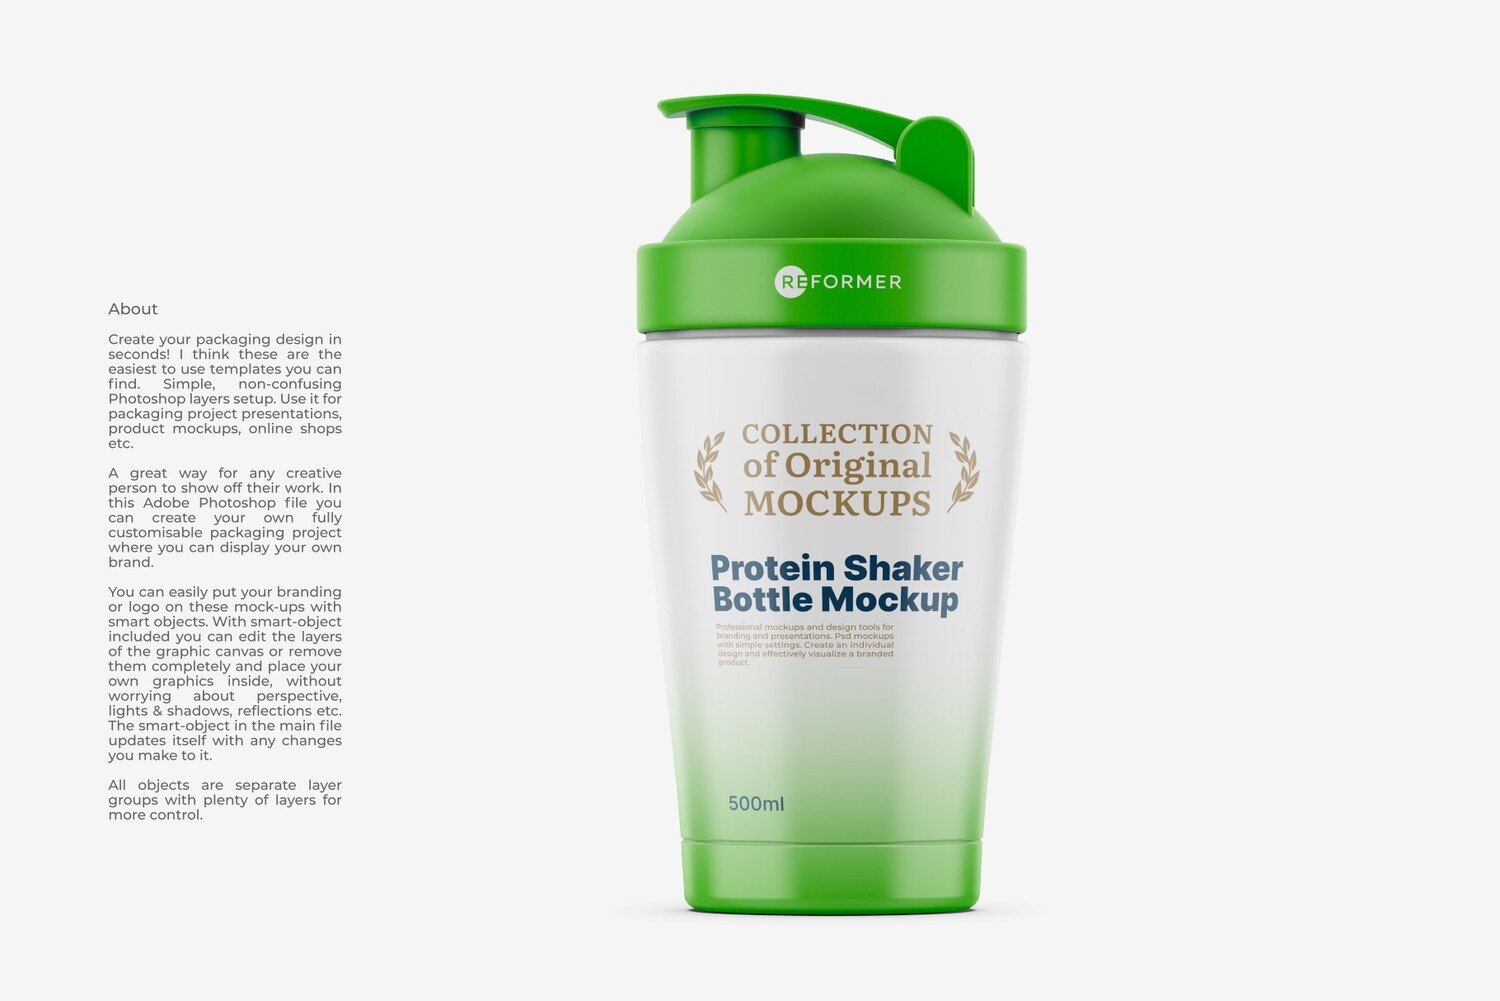 Protein Shaker Bottle Mockup LW 500ml